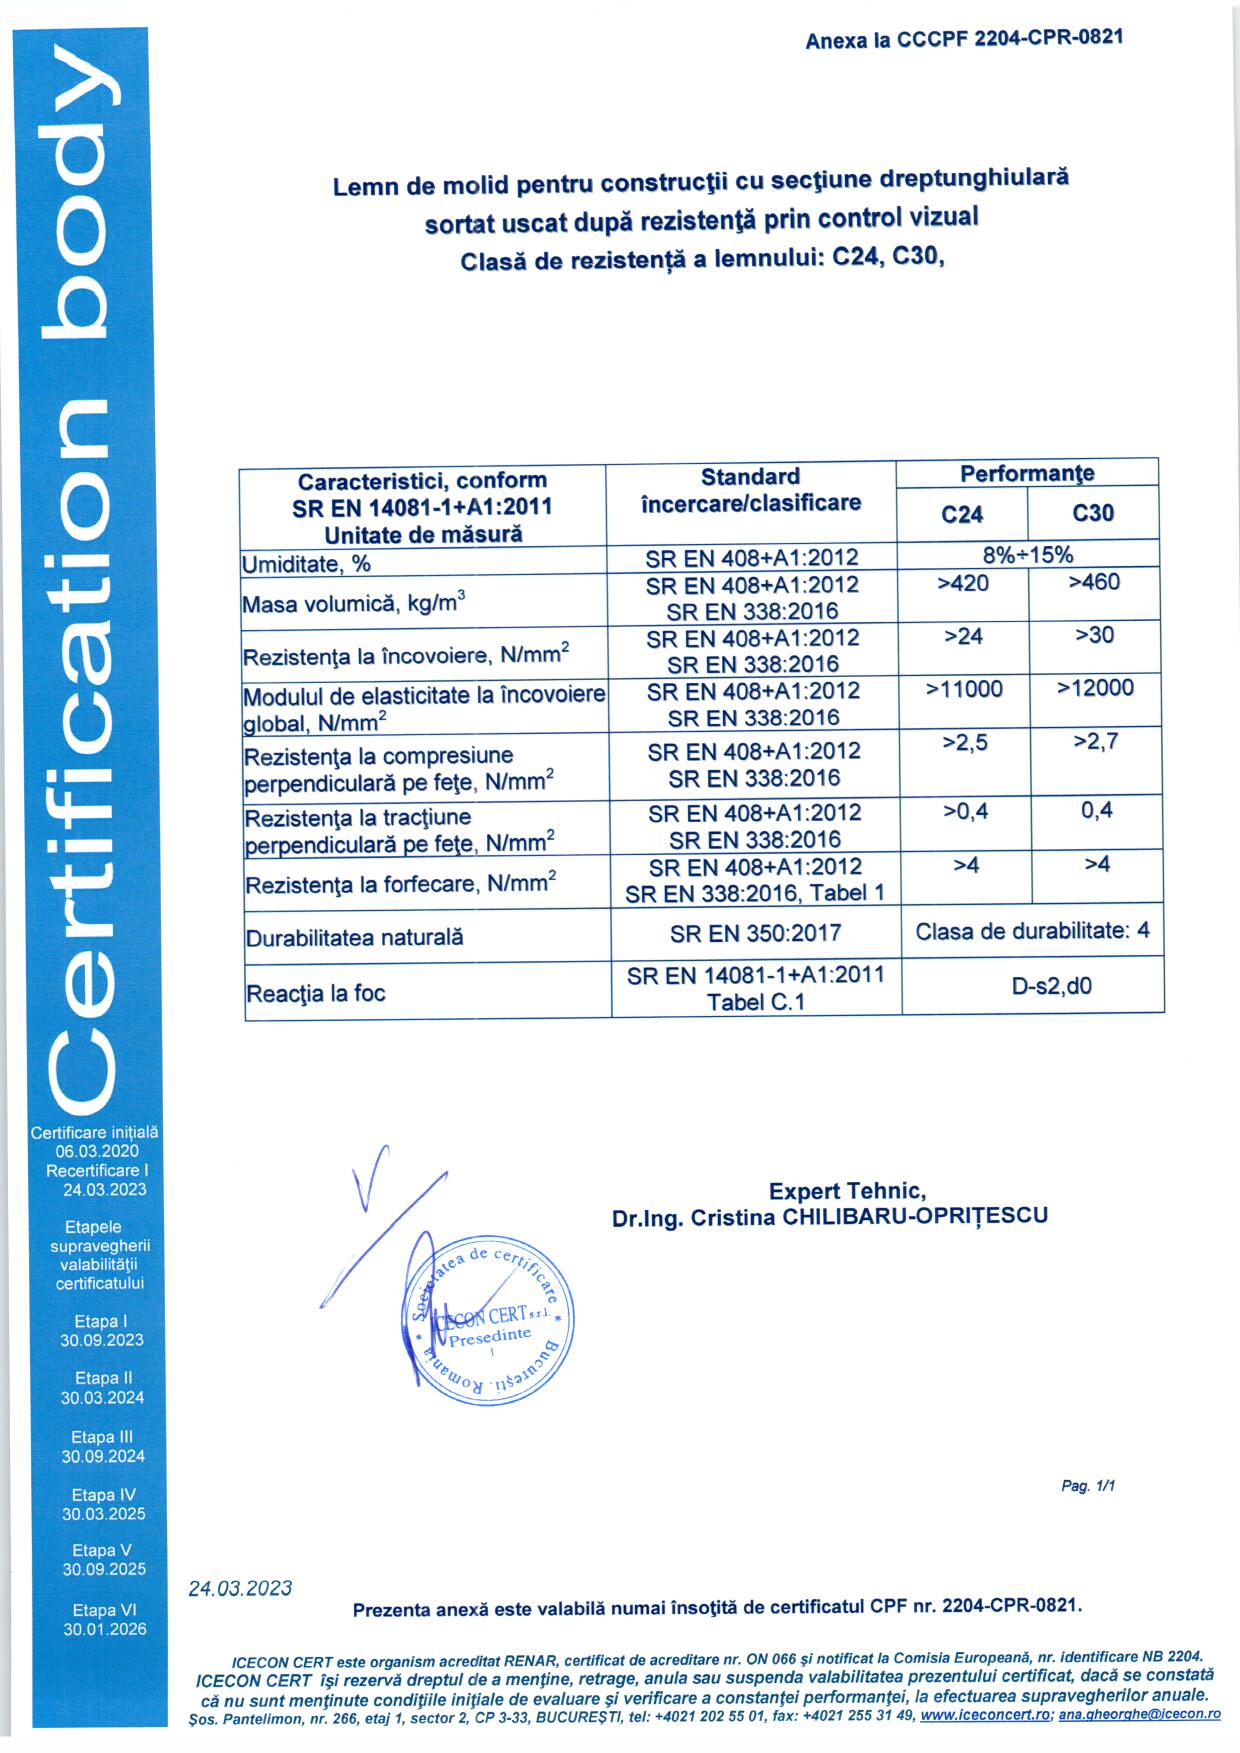 GLULAM Certificat conformitate 2023 - Lemn constructii sortat C24 C30 2